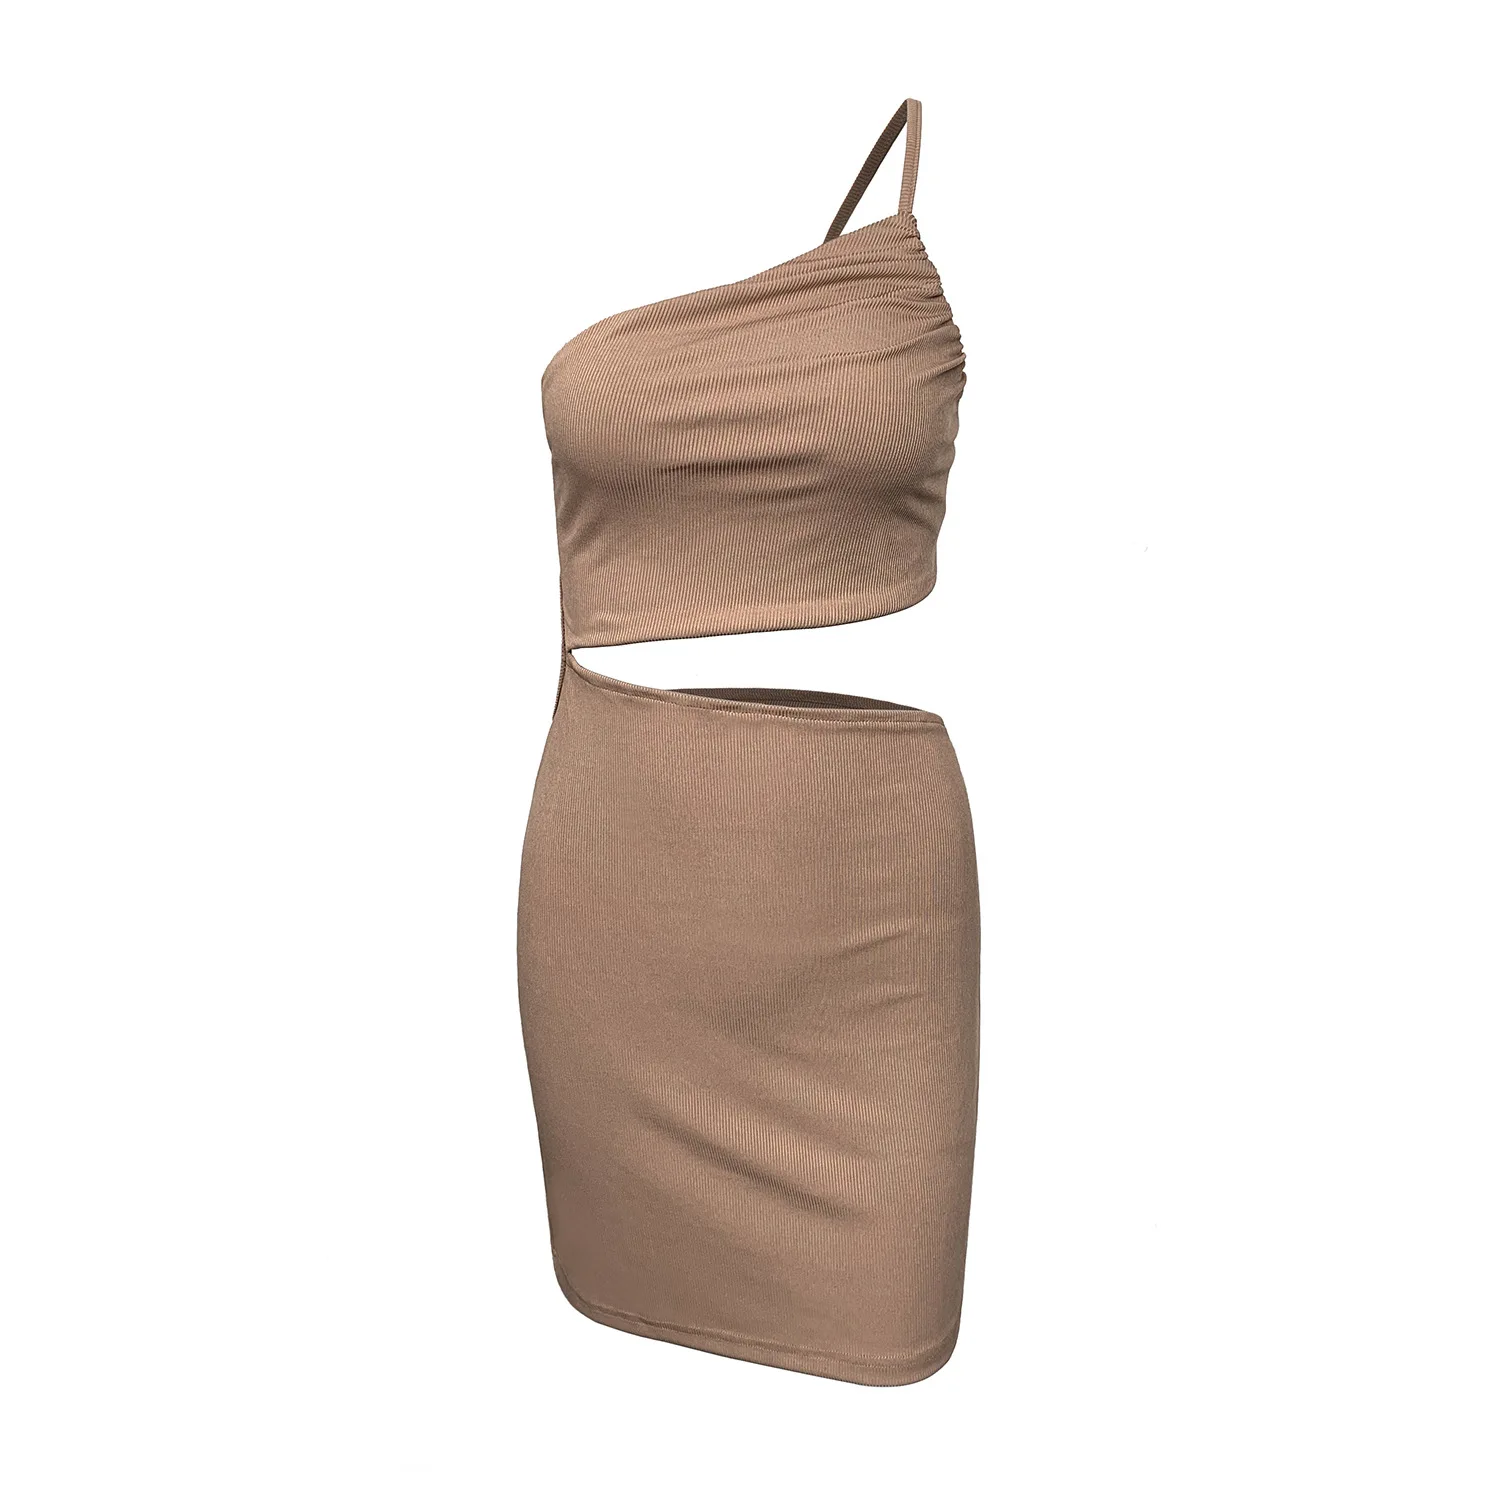 Design sense niche one-shoulder drawstring dress female summer hollowed out bag hip suspender dress short skirt